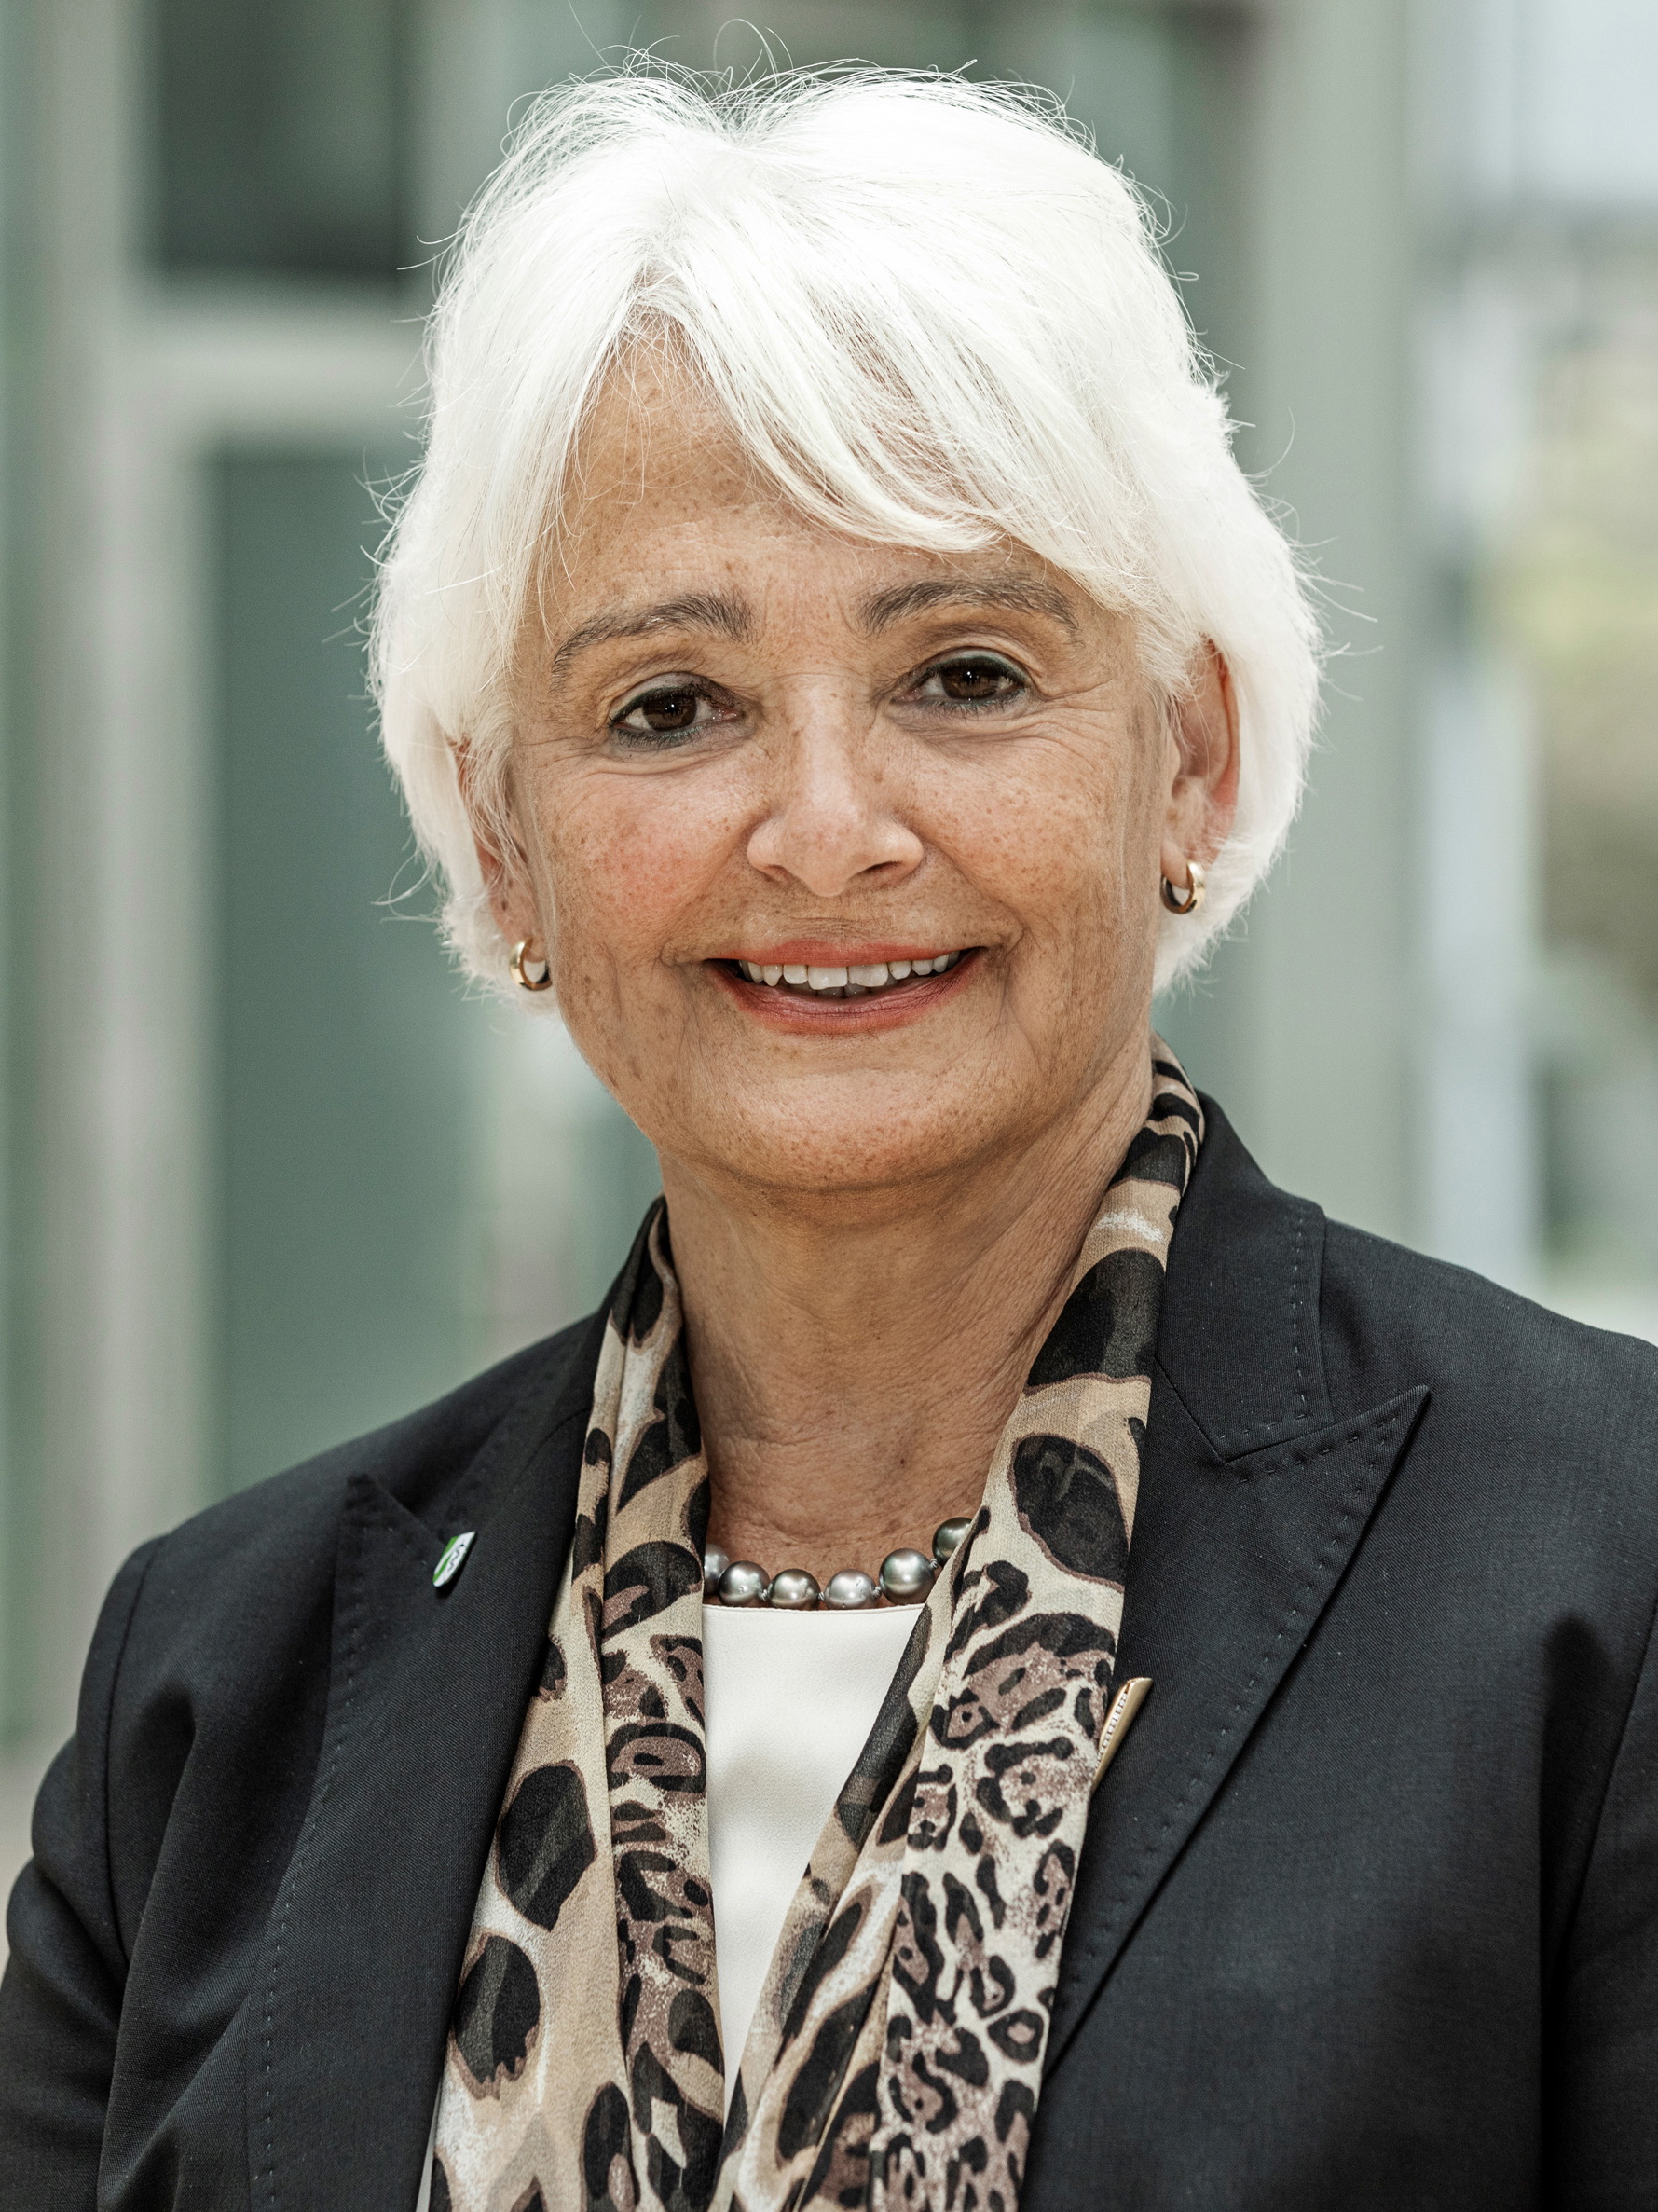 Dr. Christiane Groß